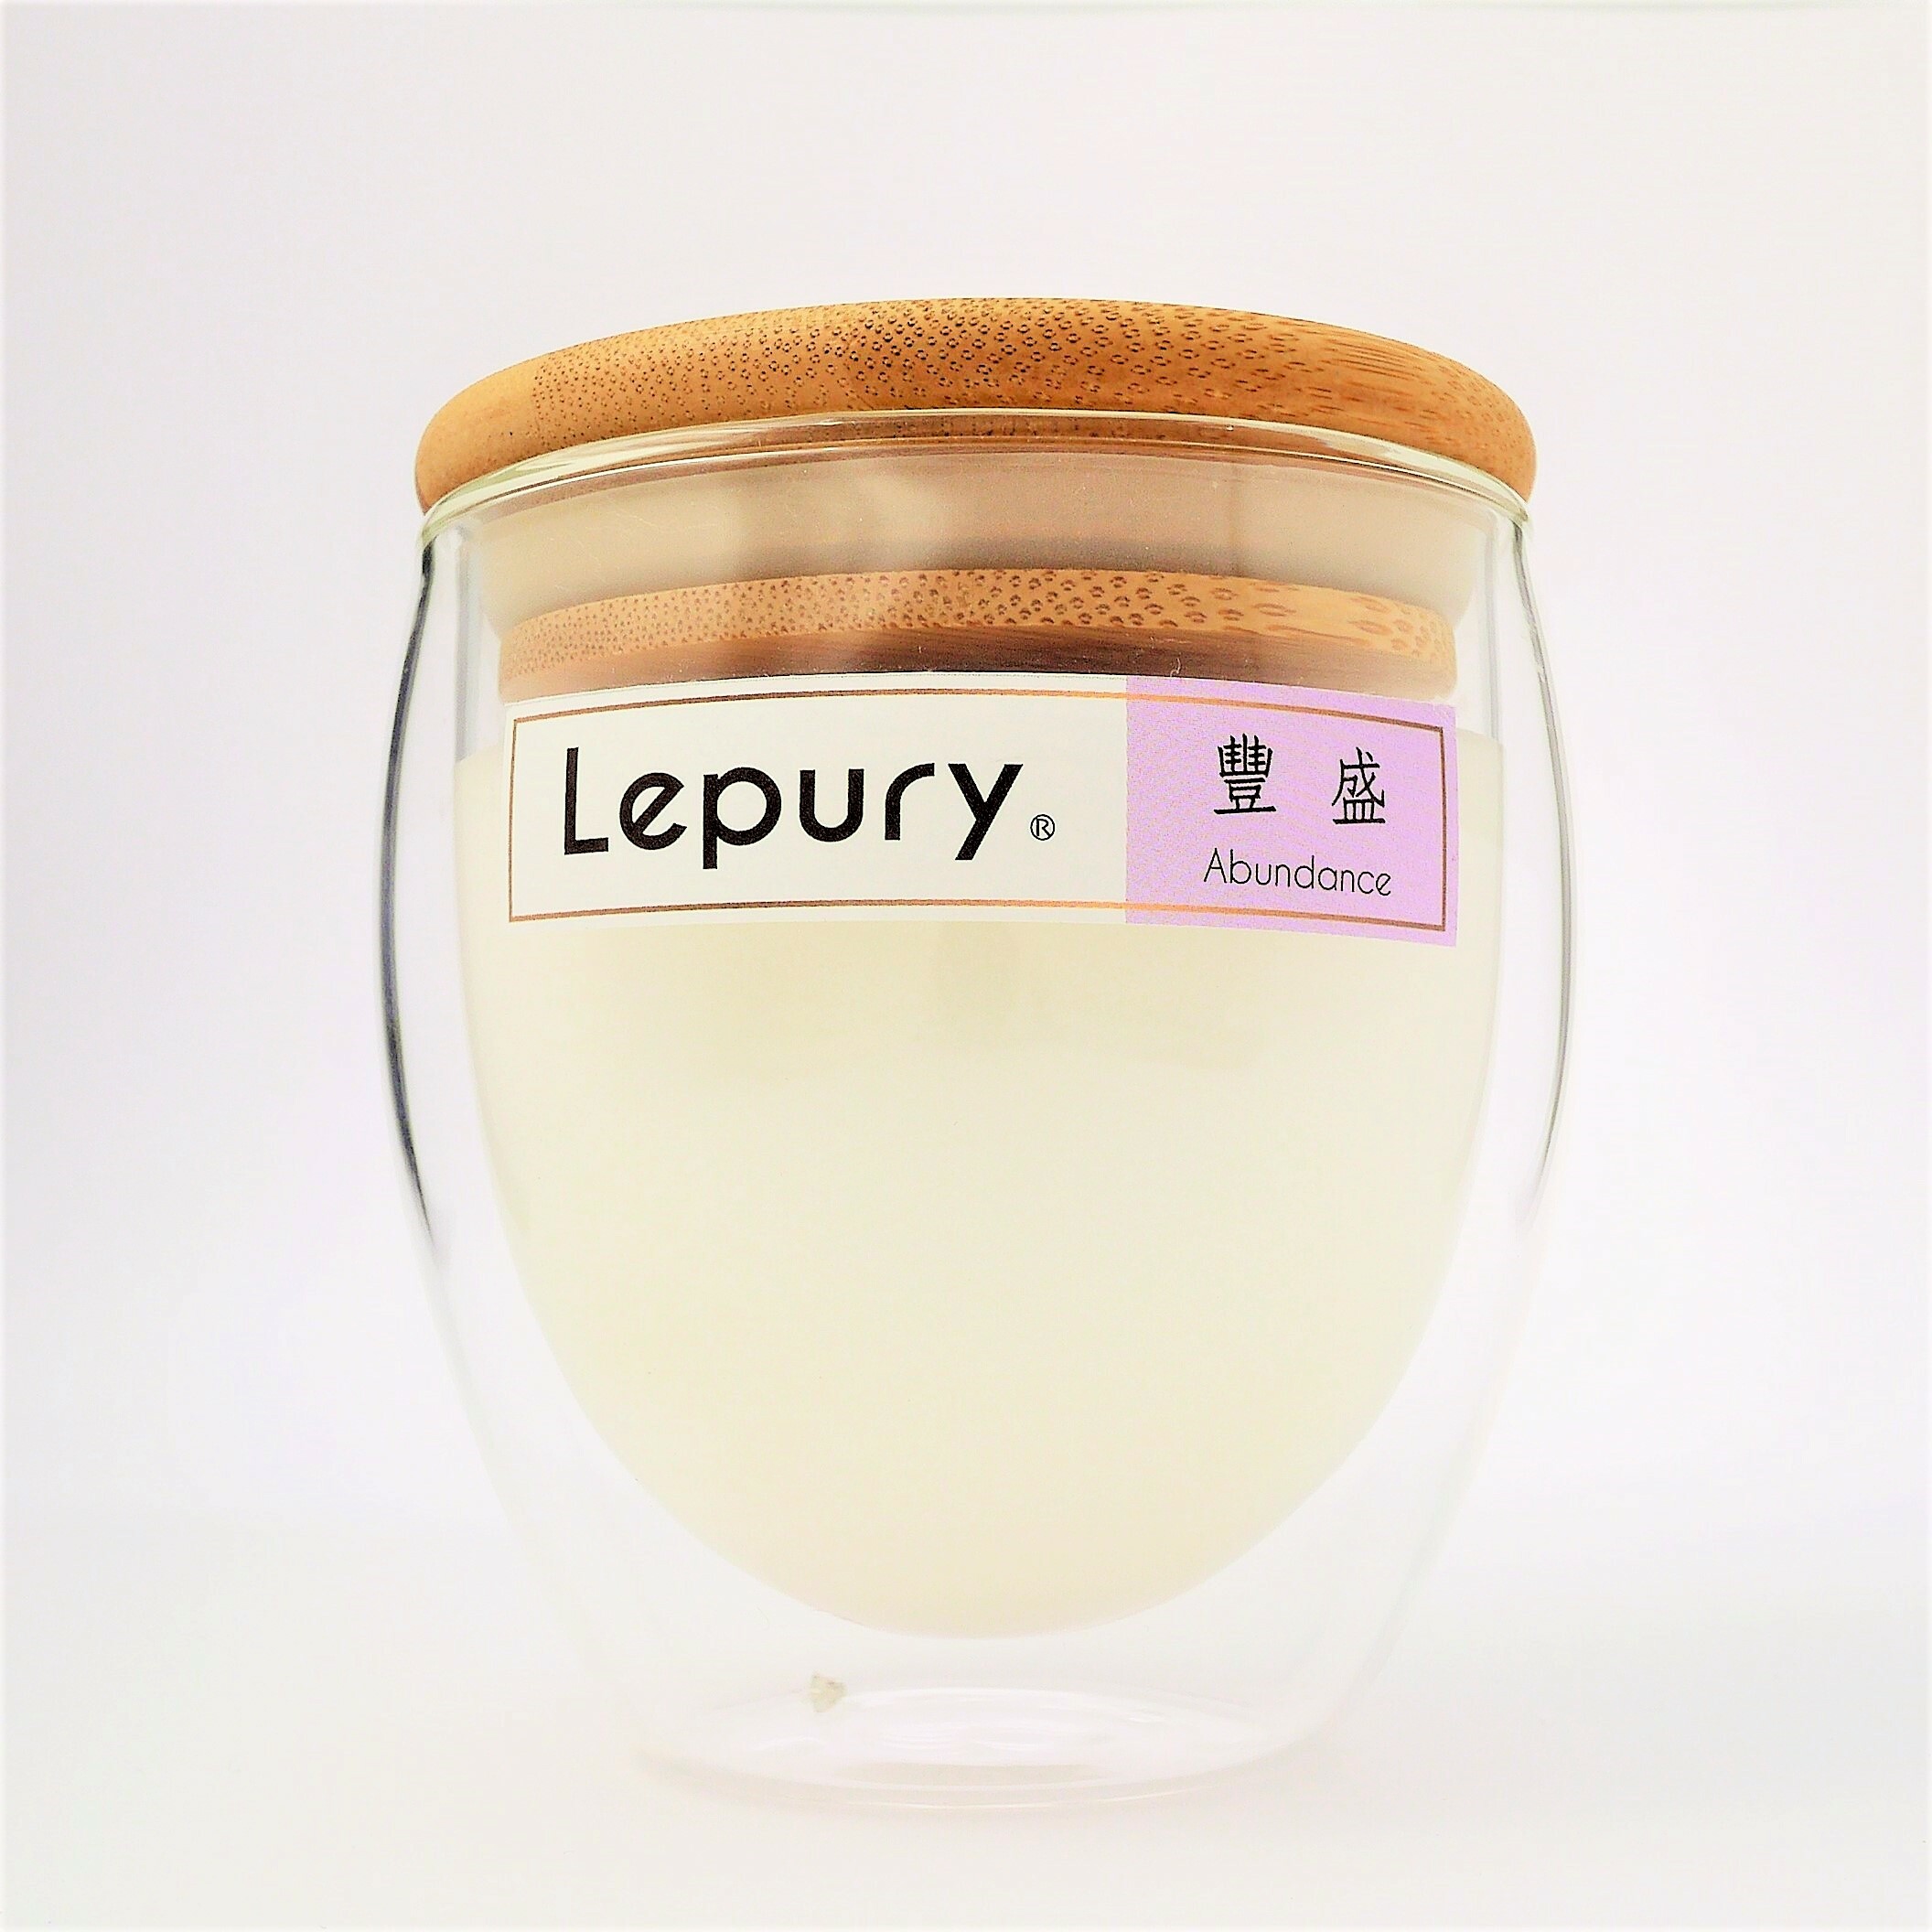 Lepury 豐盛心靈蠟燭 1